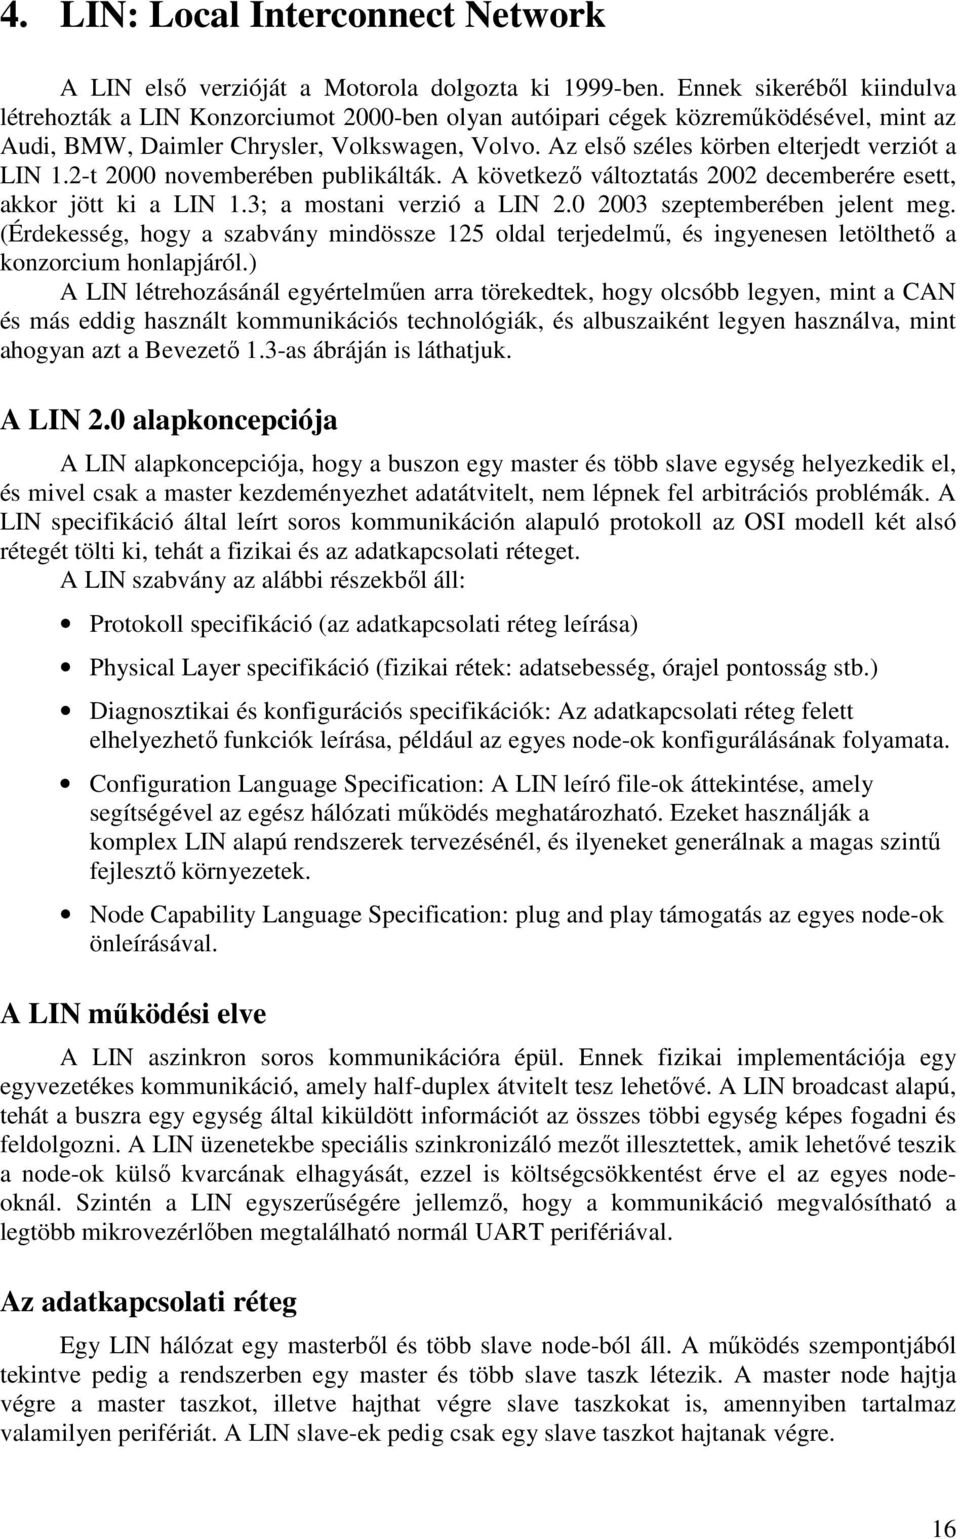 Az elsı széles körben elterjedt verziót a LIN 1.2-t 2000 novemberében publikálták. A következı változtatás 2002 decemberére esett, akkor jött ki a LIN 1.3; a mostani verzió a LIN 2.